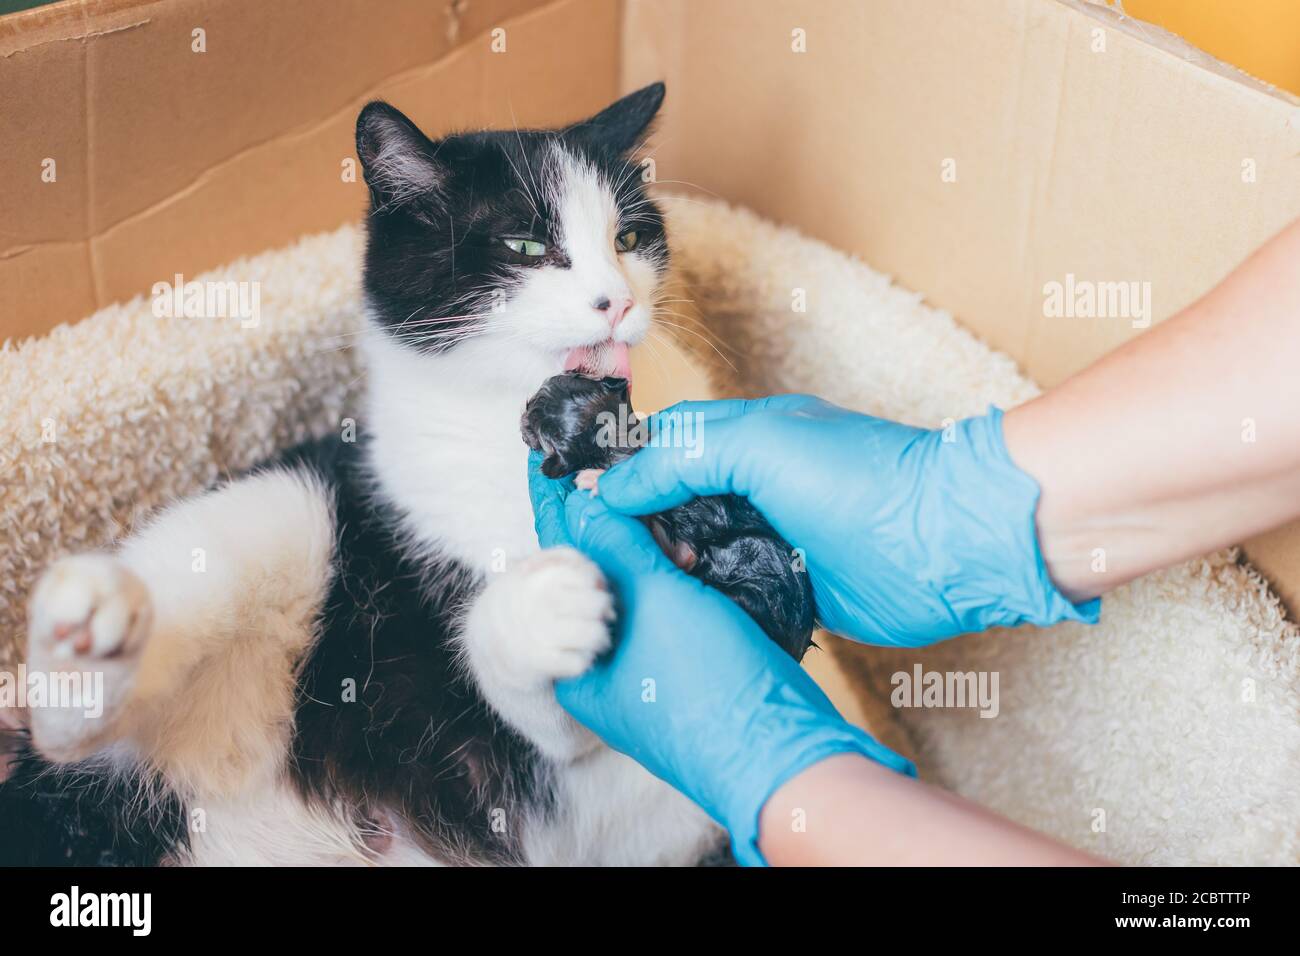 Proprietario o veterinario che sostiene un gatto durante il parto o parto - medico con guanti in lattice che tengono un cucciolo neonato e. dare a sua madre t Foto Stock